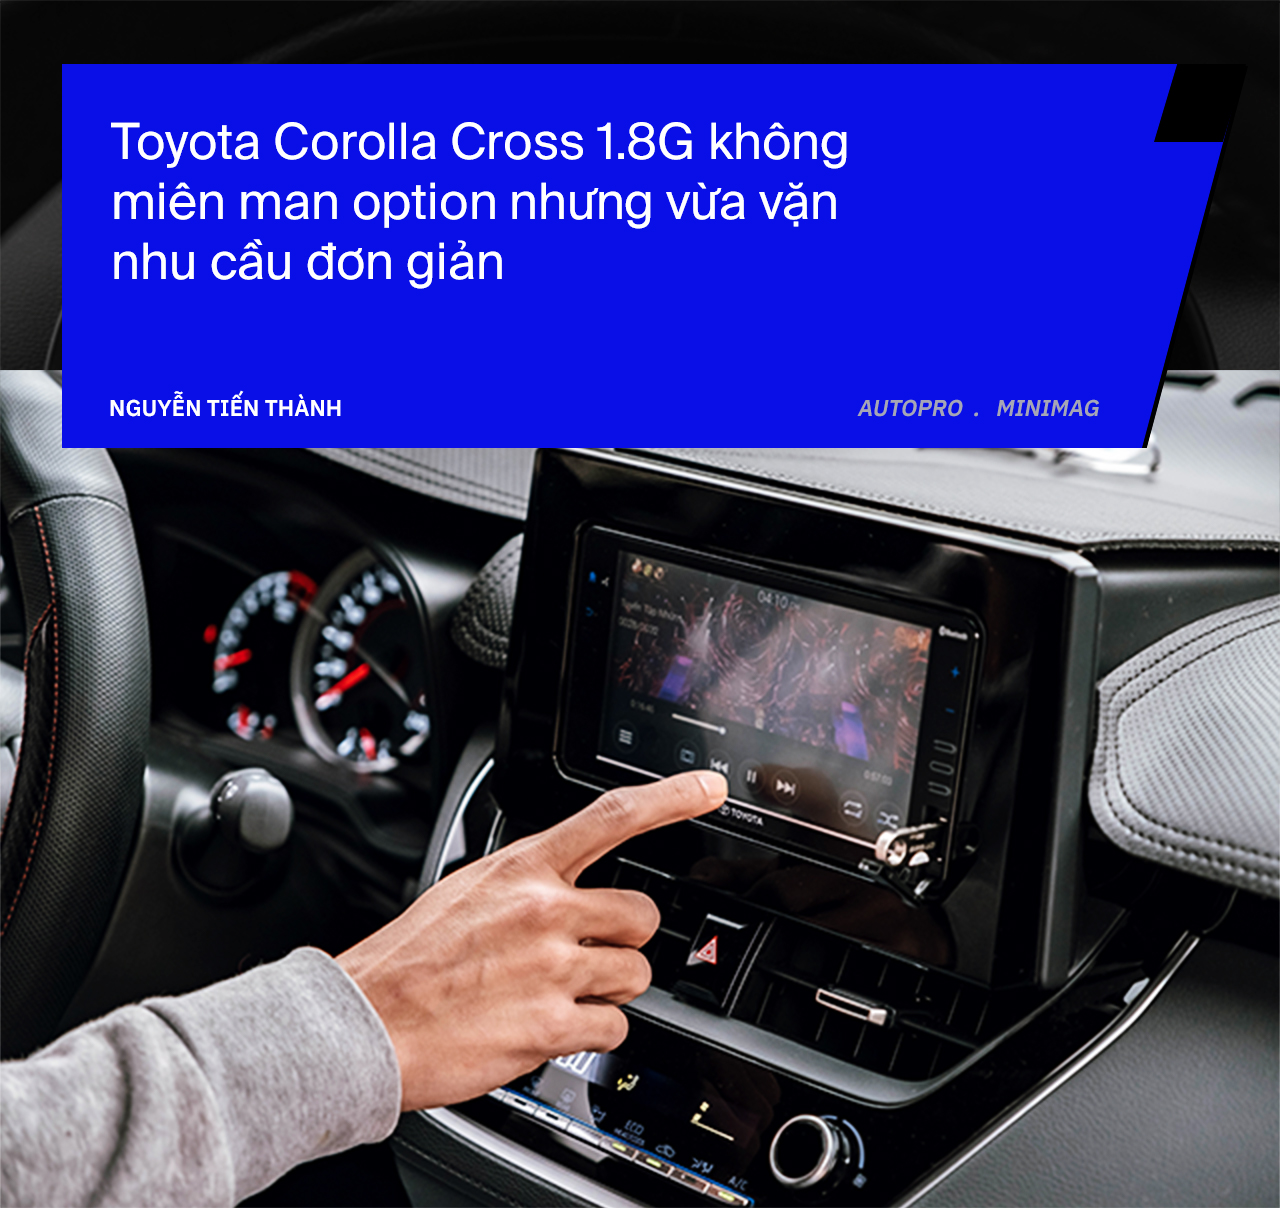 Bỏ cọc Kia Seltos để mua Toyota Corolla Cross bản rẻ nhất, người dùng đánh giá sau 3 tháng: ‘Đủ những thứ tôi cần’ - Ảnh 7.